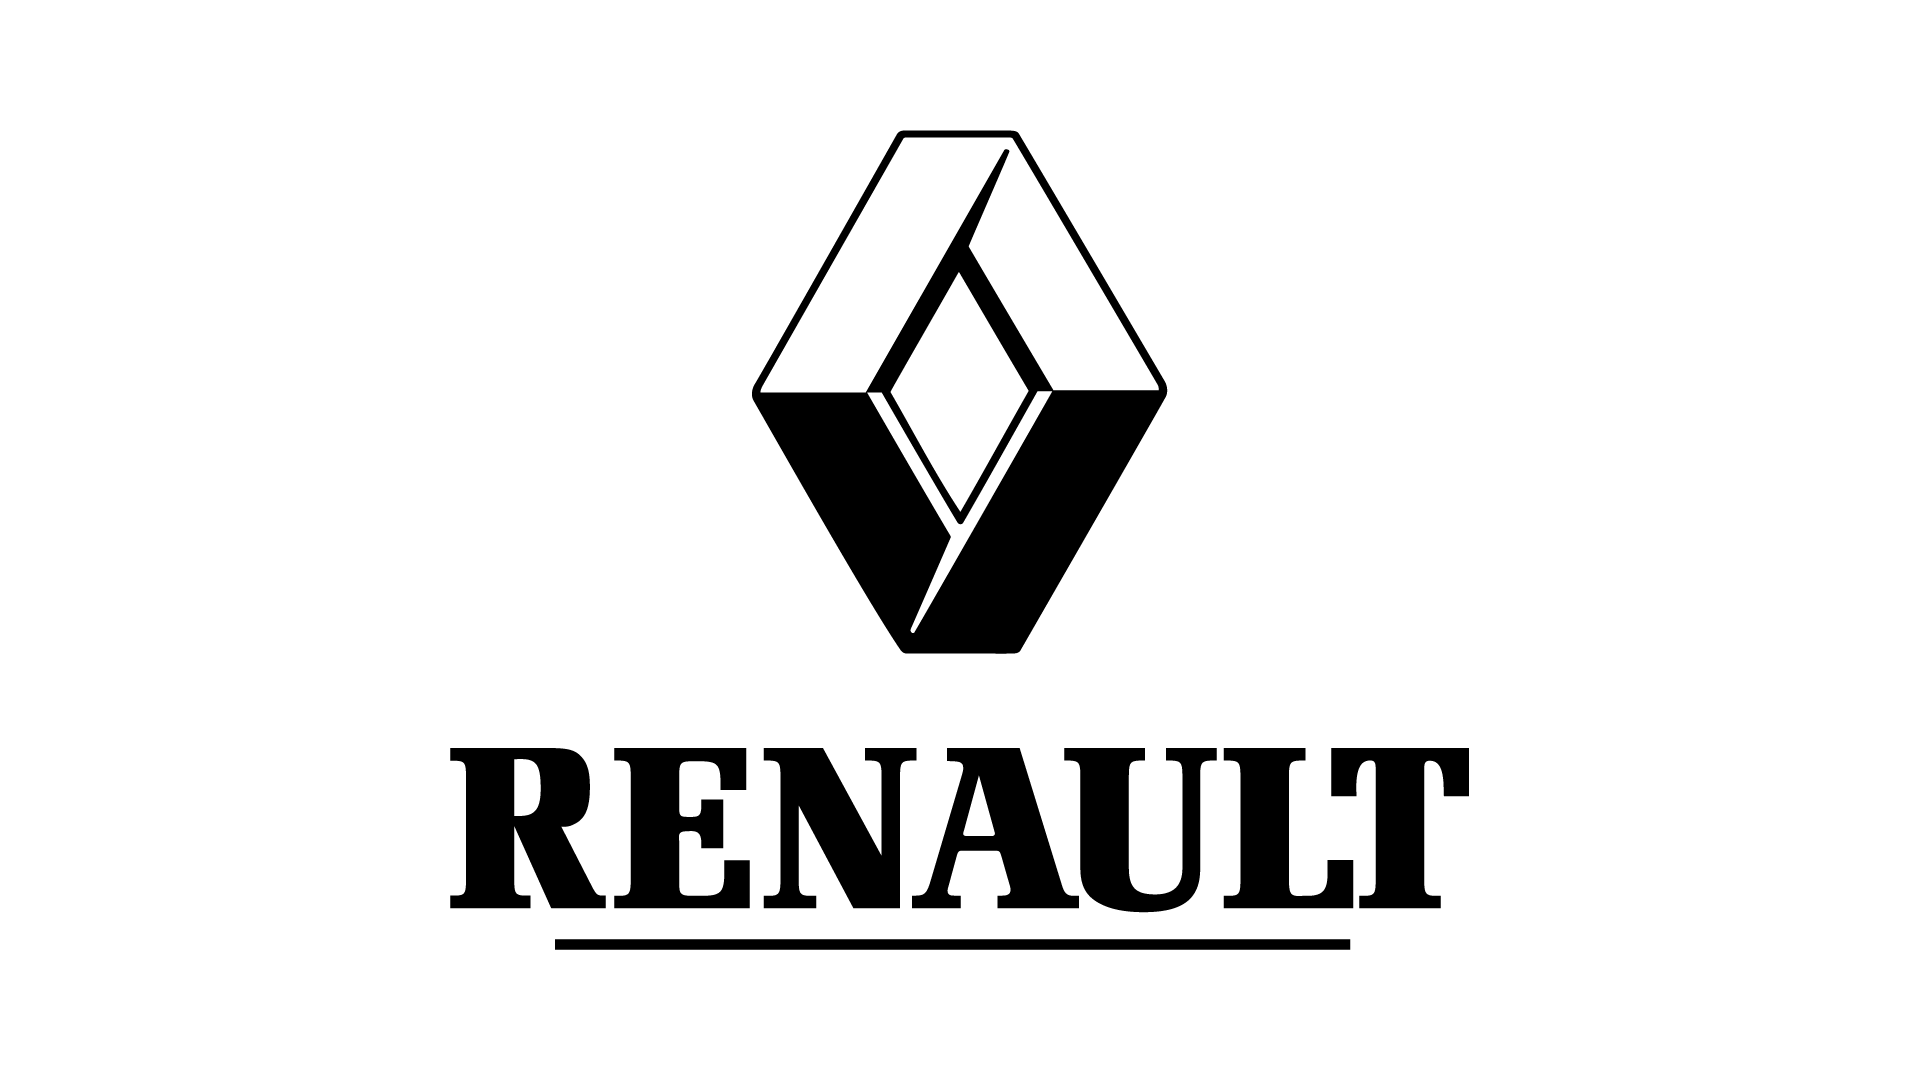 Download PNG image - Renault Logo PNG Transparent Image 